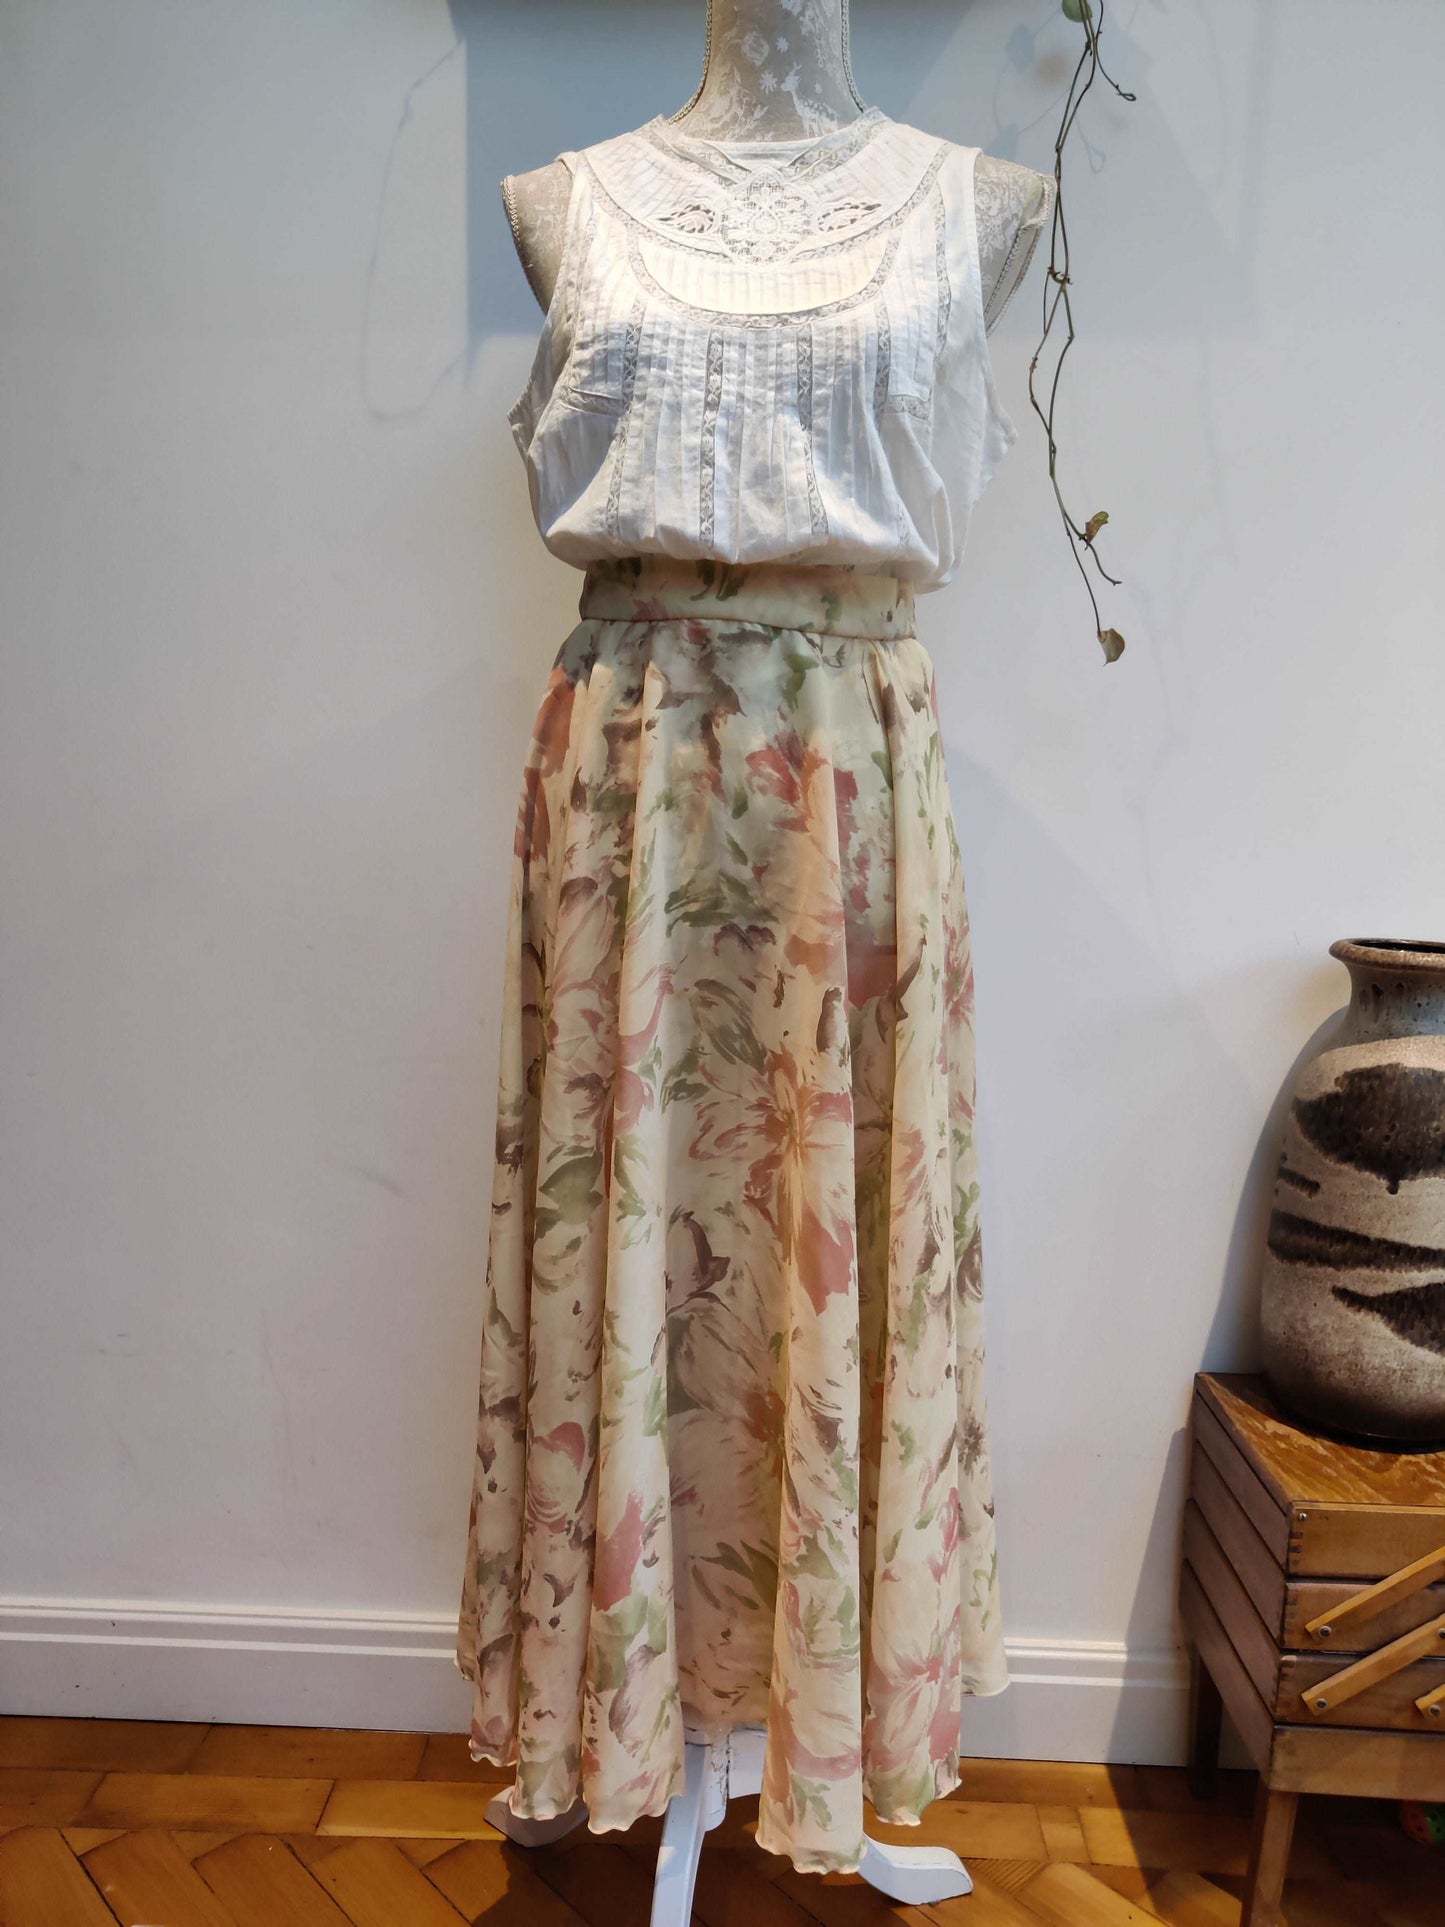 Stunning summer floral skirt in floral design. size 12-14.